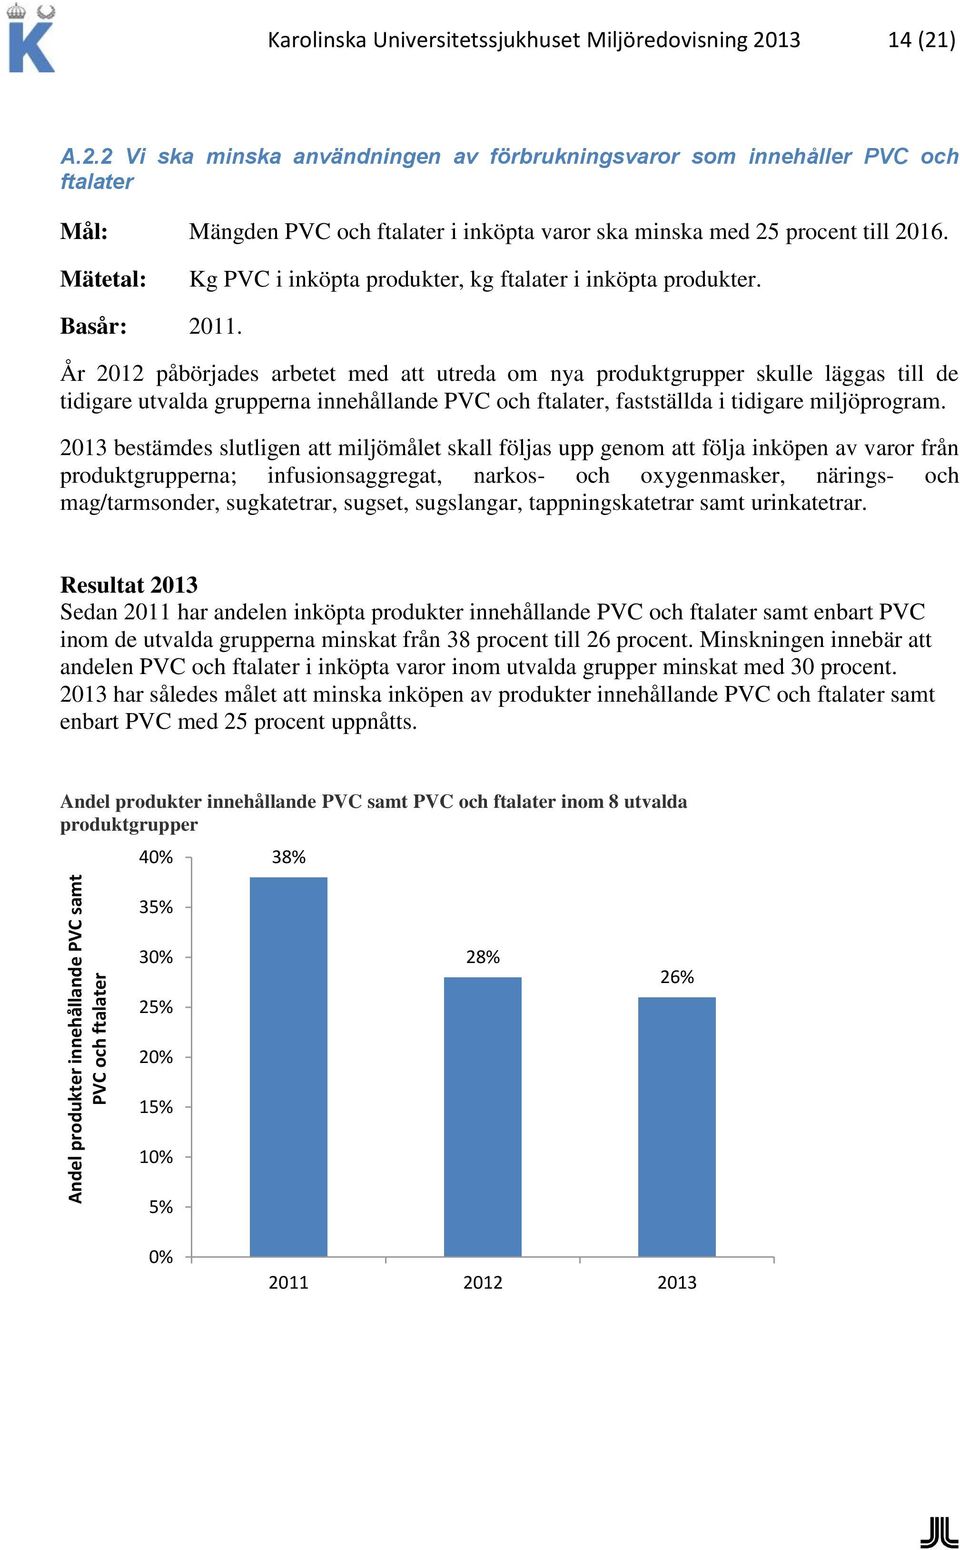 Mätetal: Kg PVC i inköpta produkter, kg ftalater i inköpta produkter. Basår: 2011.